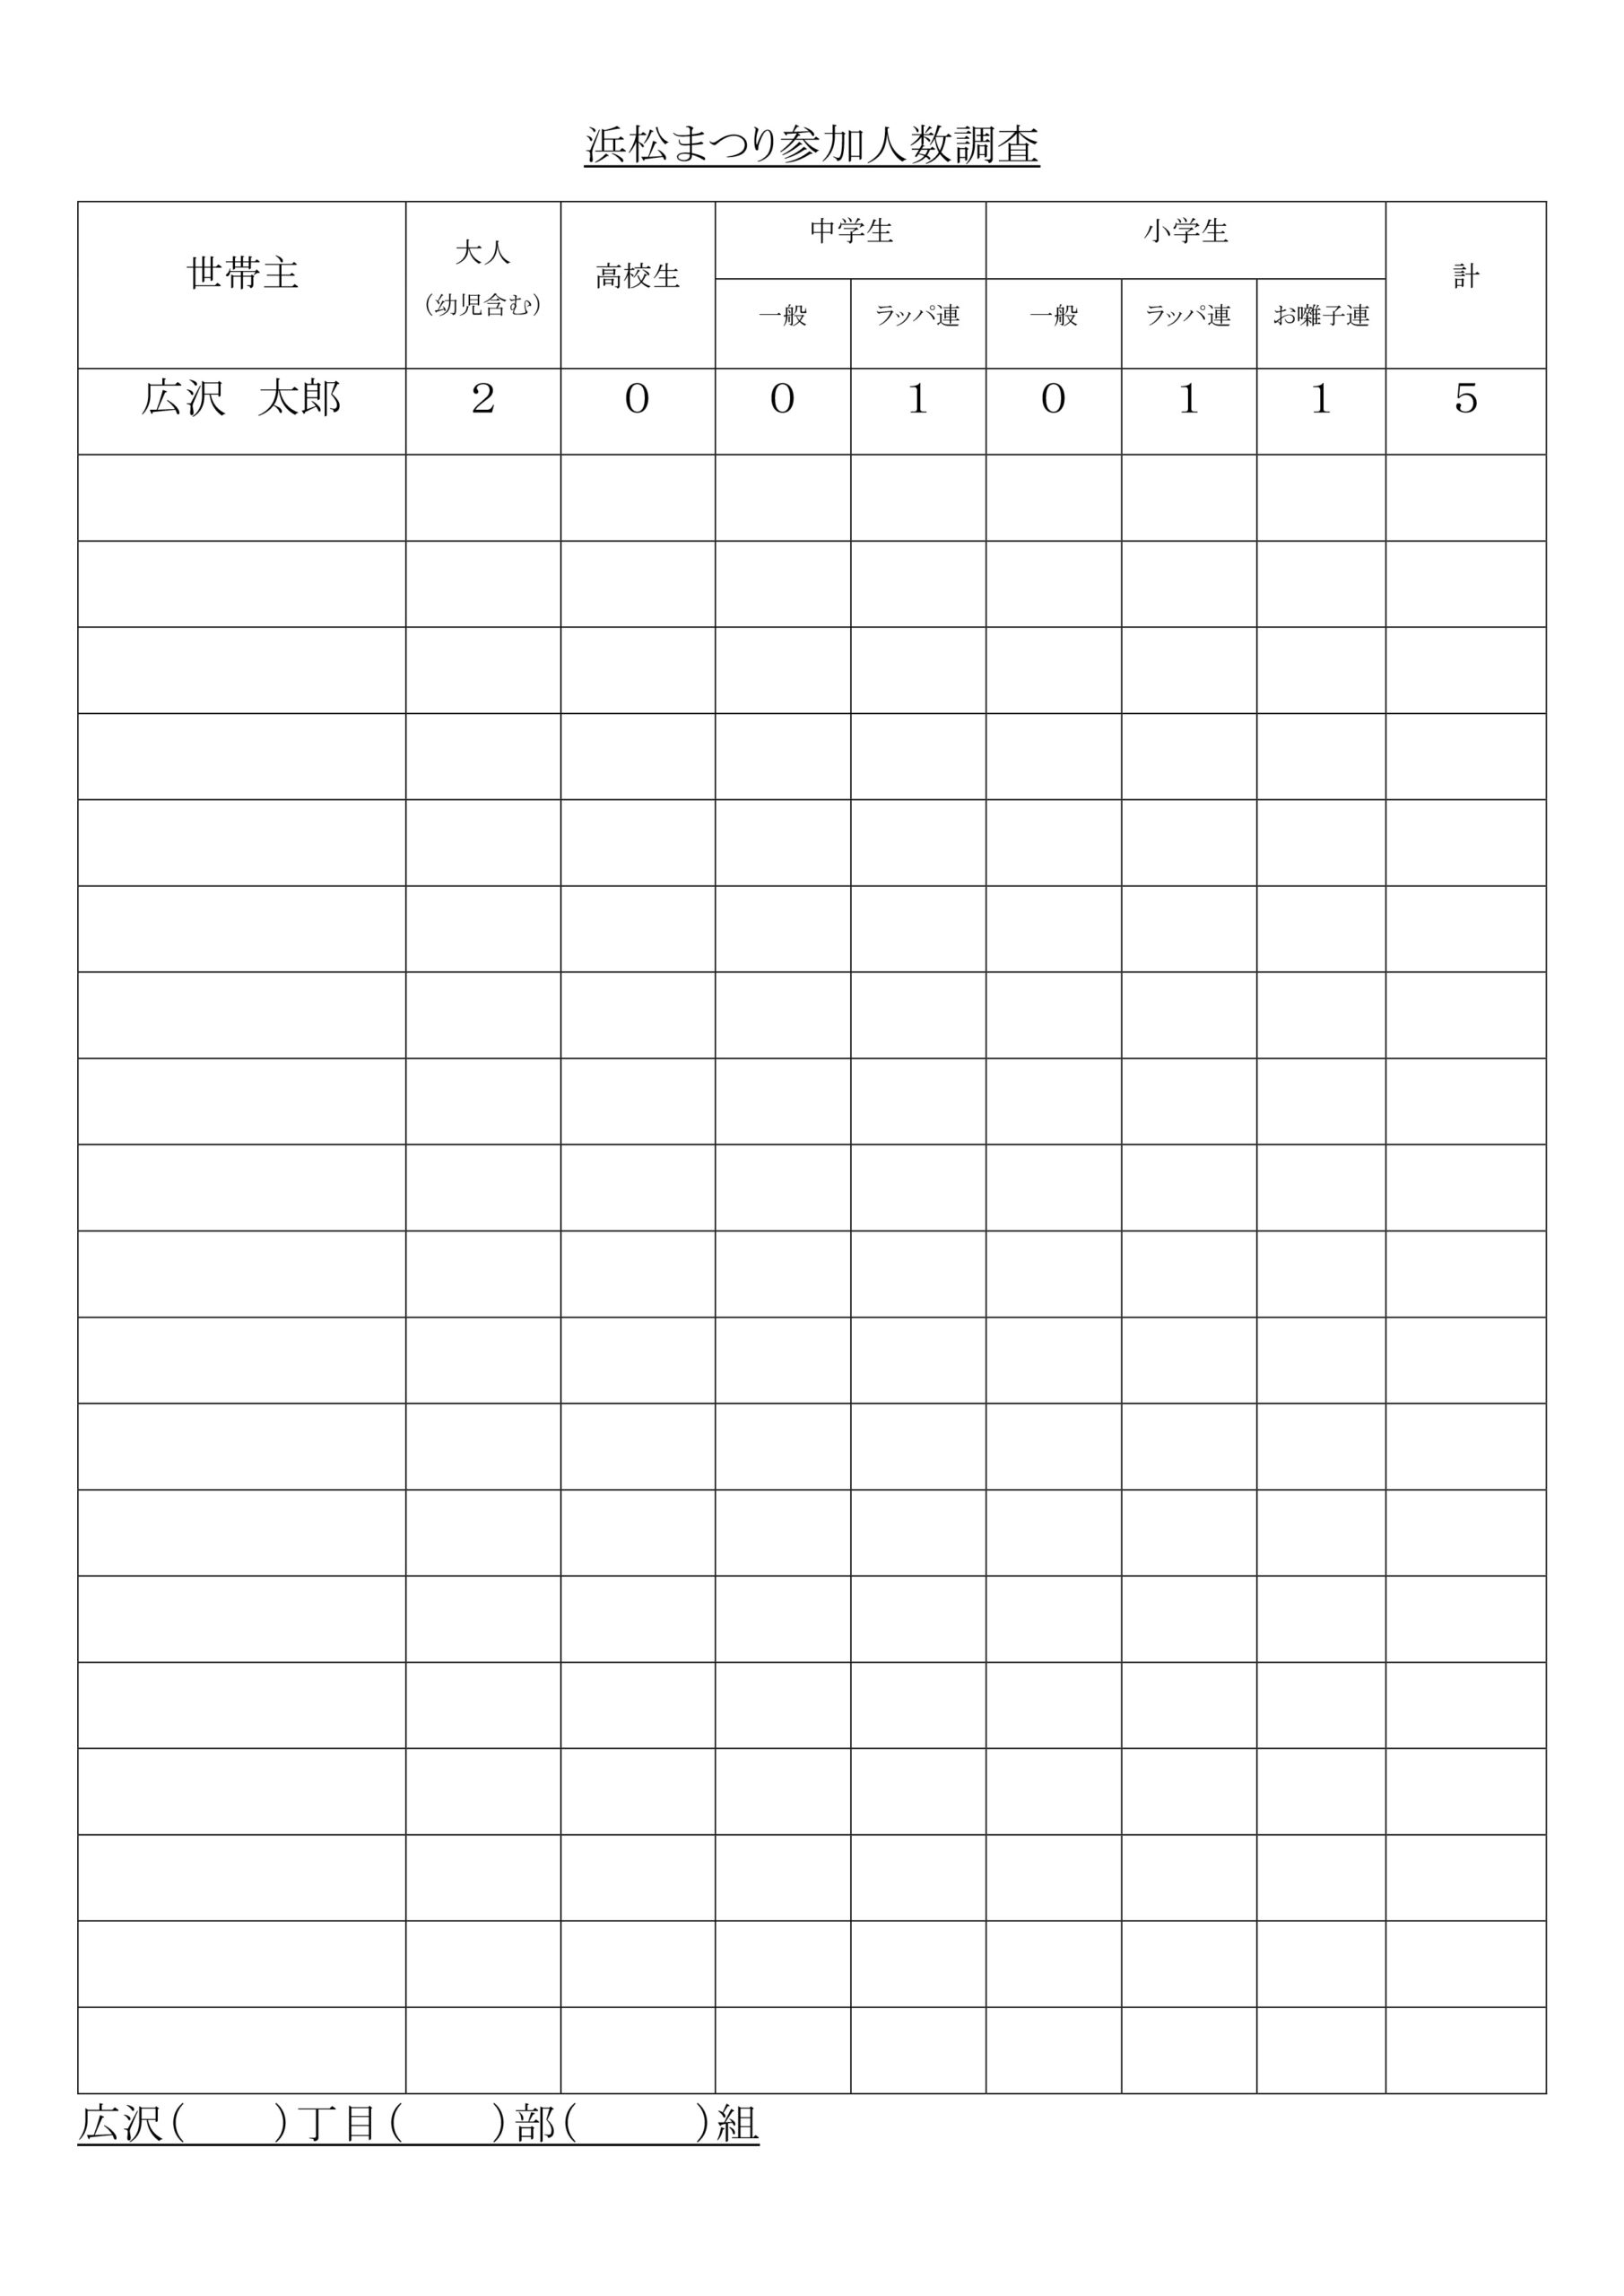 【回覧資料 令和4年3月5日】広沢町浜松まつり参加人数調査について「浜松まつり参加人数調査」